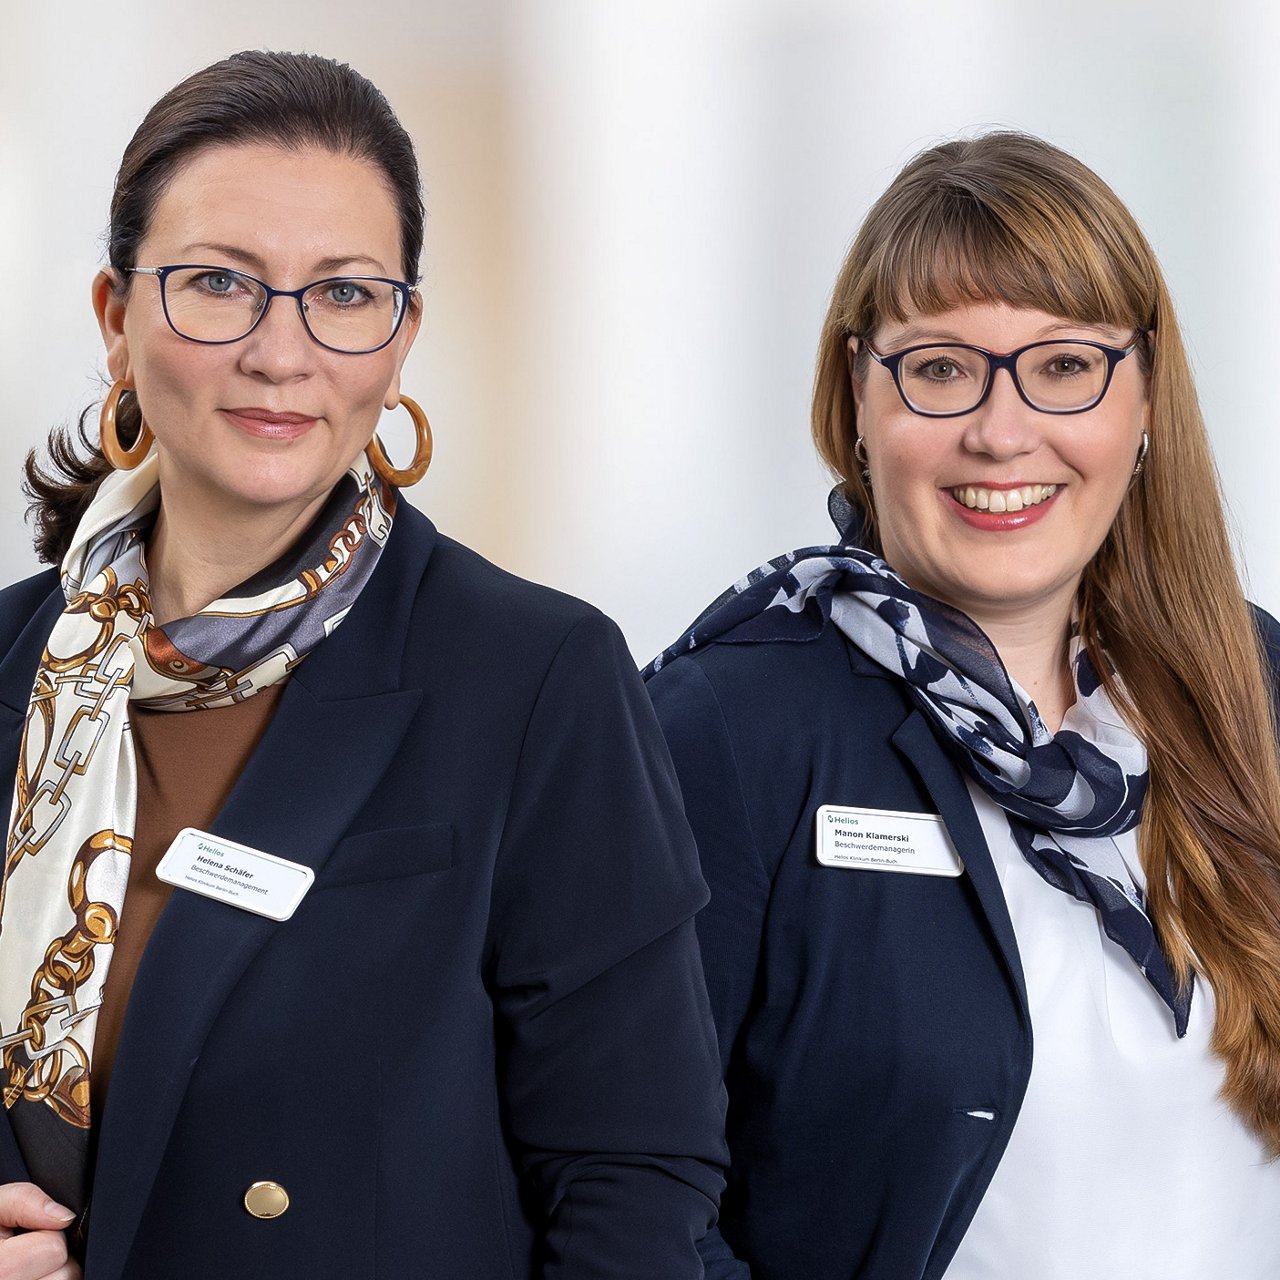 Frau Klamerski und Frau Schäfer, das Team des Beschwerdemanagements am Helios Klinikum Berlin-Buch